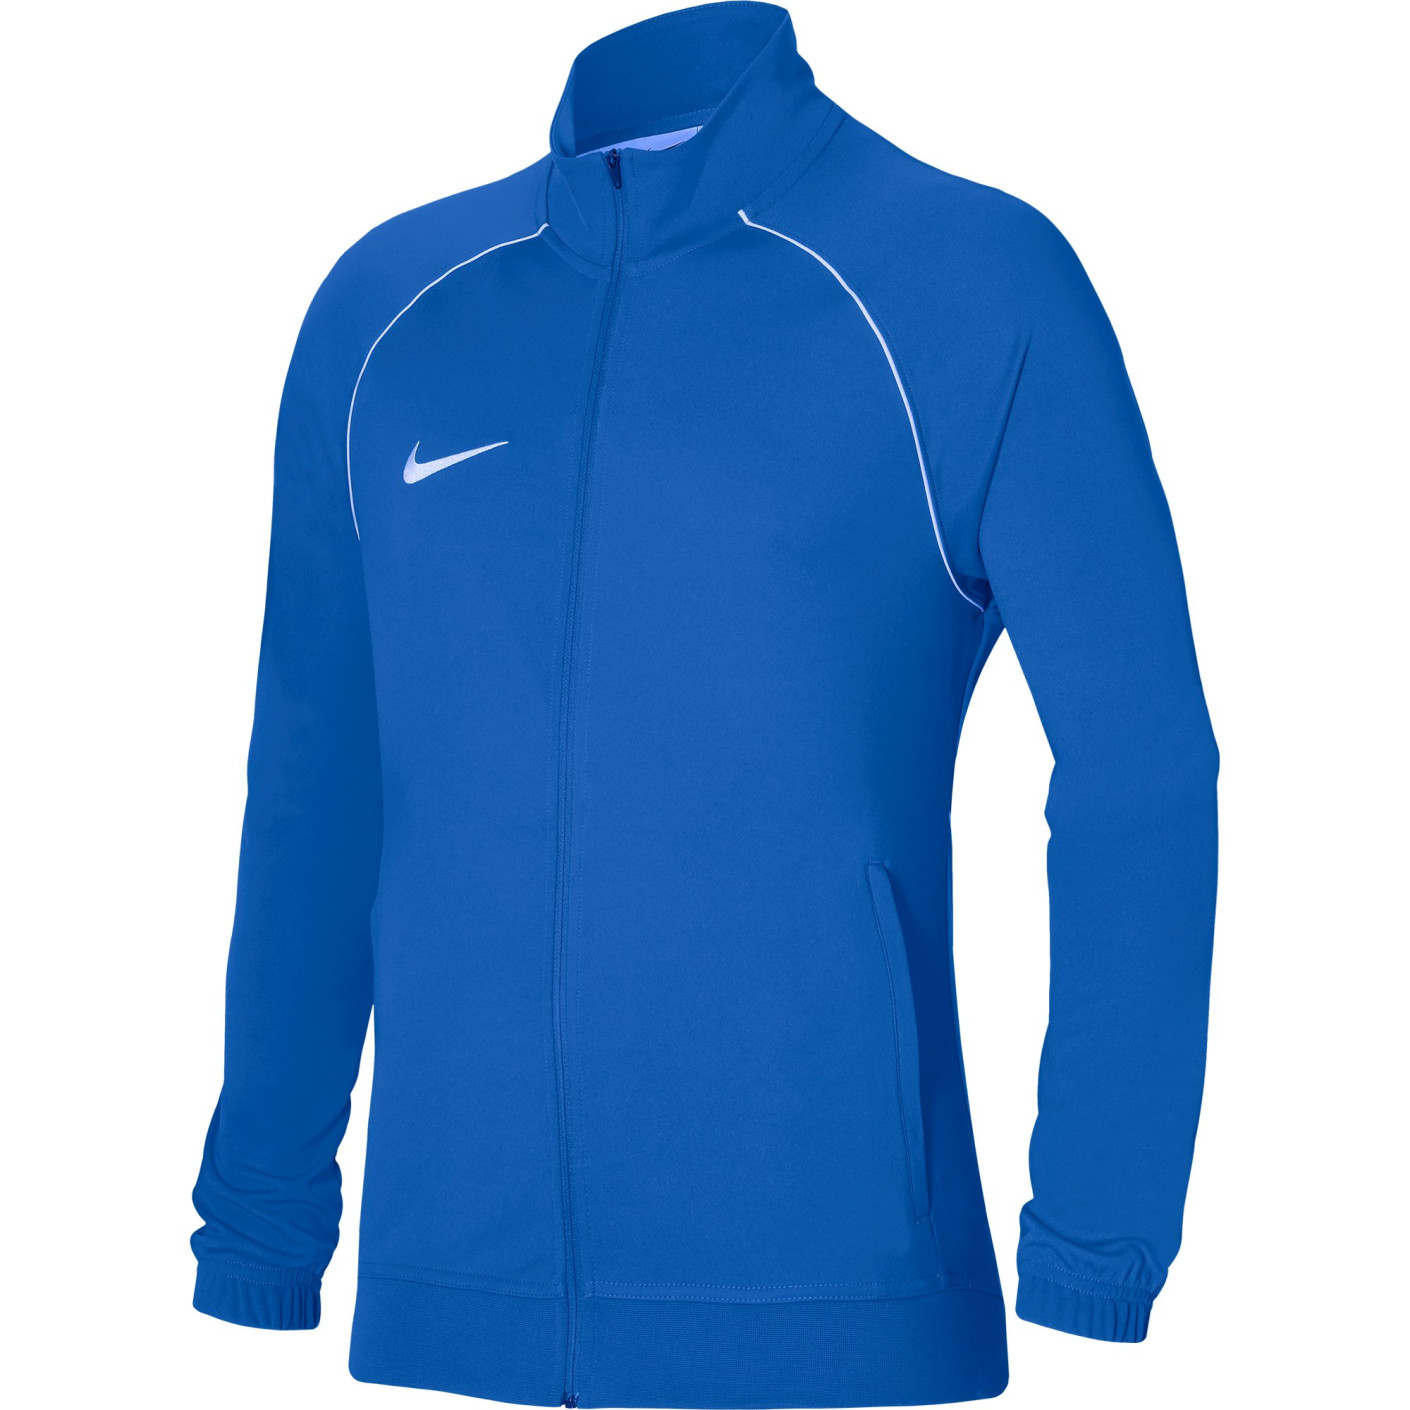 Veste d'entraînement Nike Dri-Fit Academy Pro bleu blanc